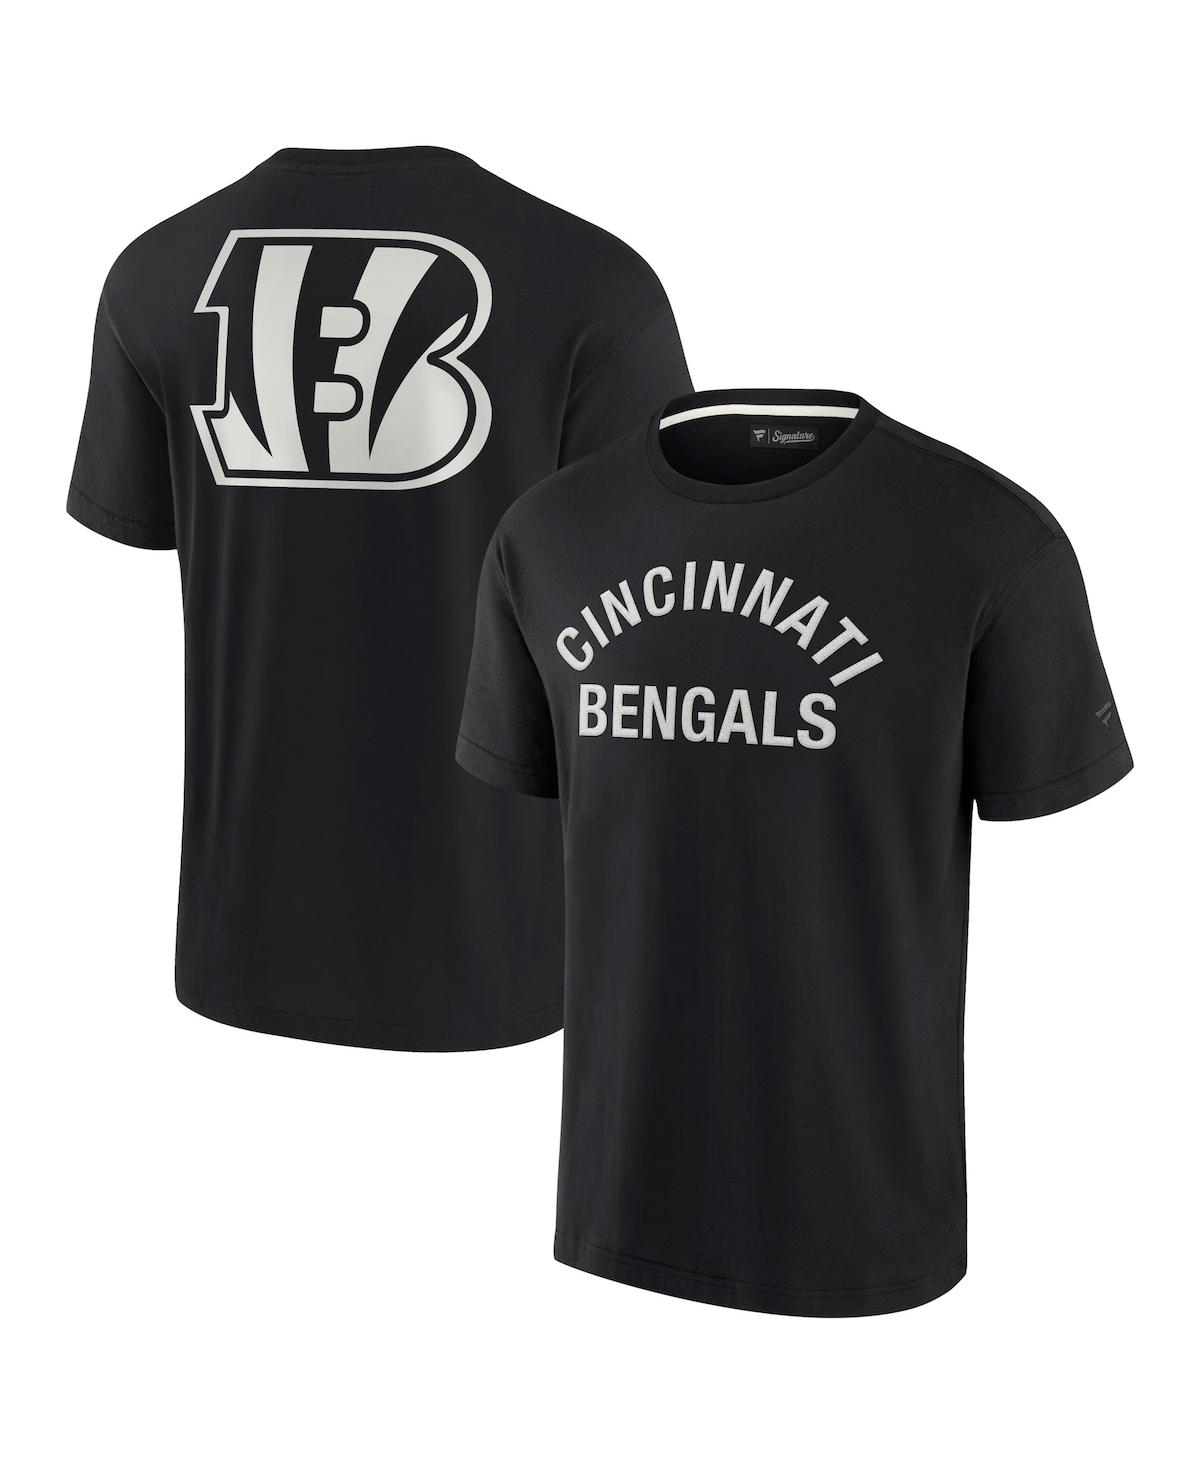 Shop Fanatics Signature Men's And Women's  Black Cincinnati Bengals Super Soft Short Sleeve T-shirt